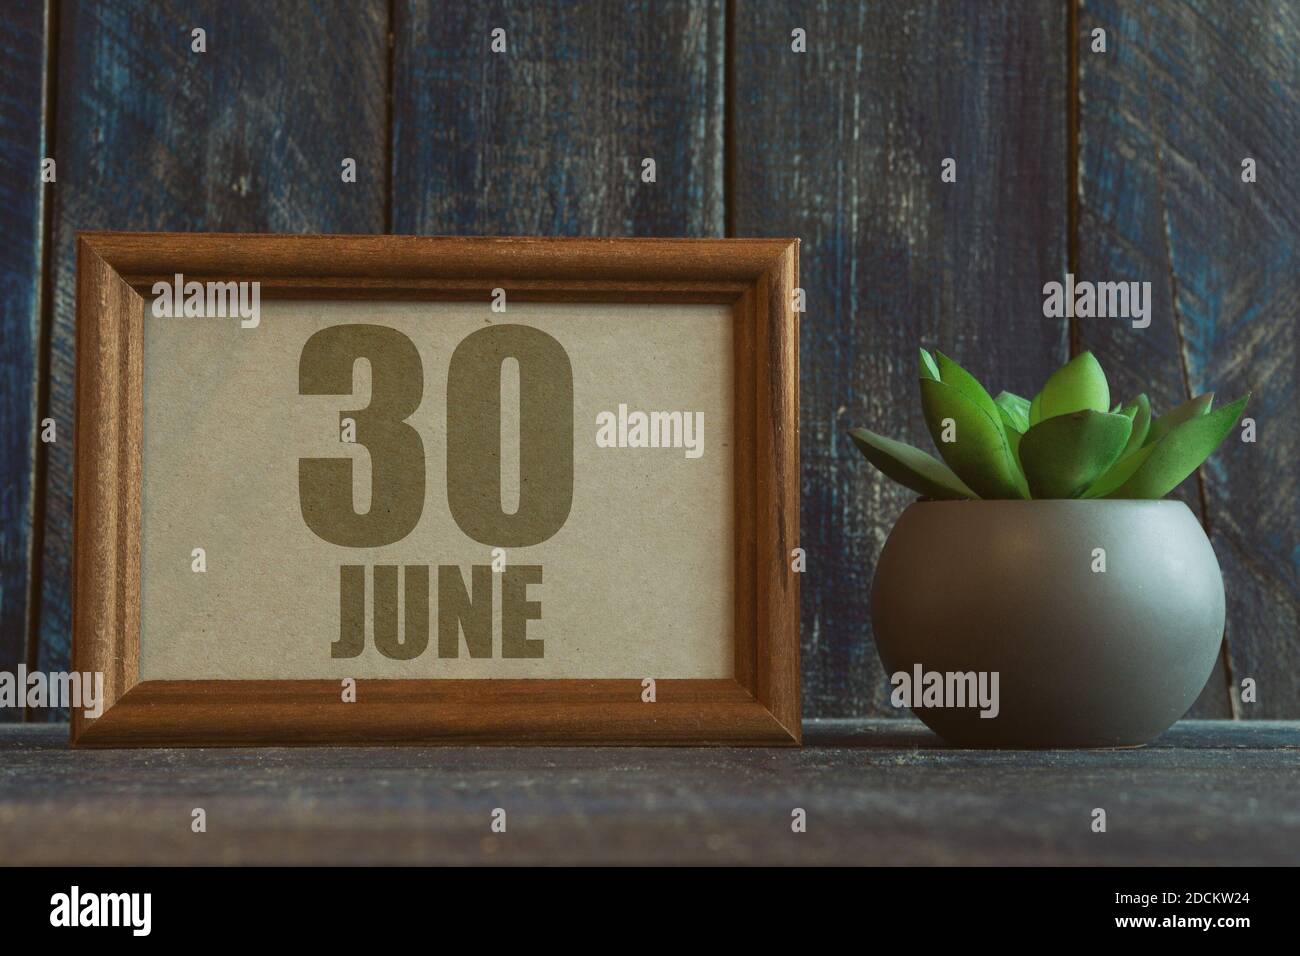 juni 30th. Tag 30 des Monats, Datum im Rahmen neben Sukkulenten auf hölzernen Hintergrund Sommermonat, Tag des Jahres Konzept Stockfoto